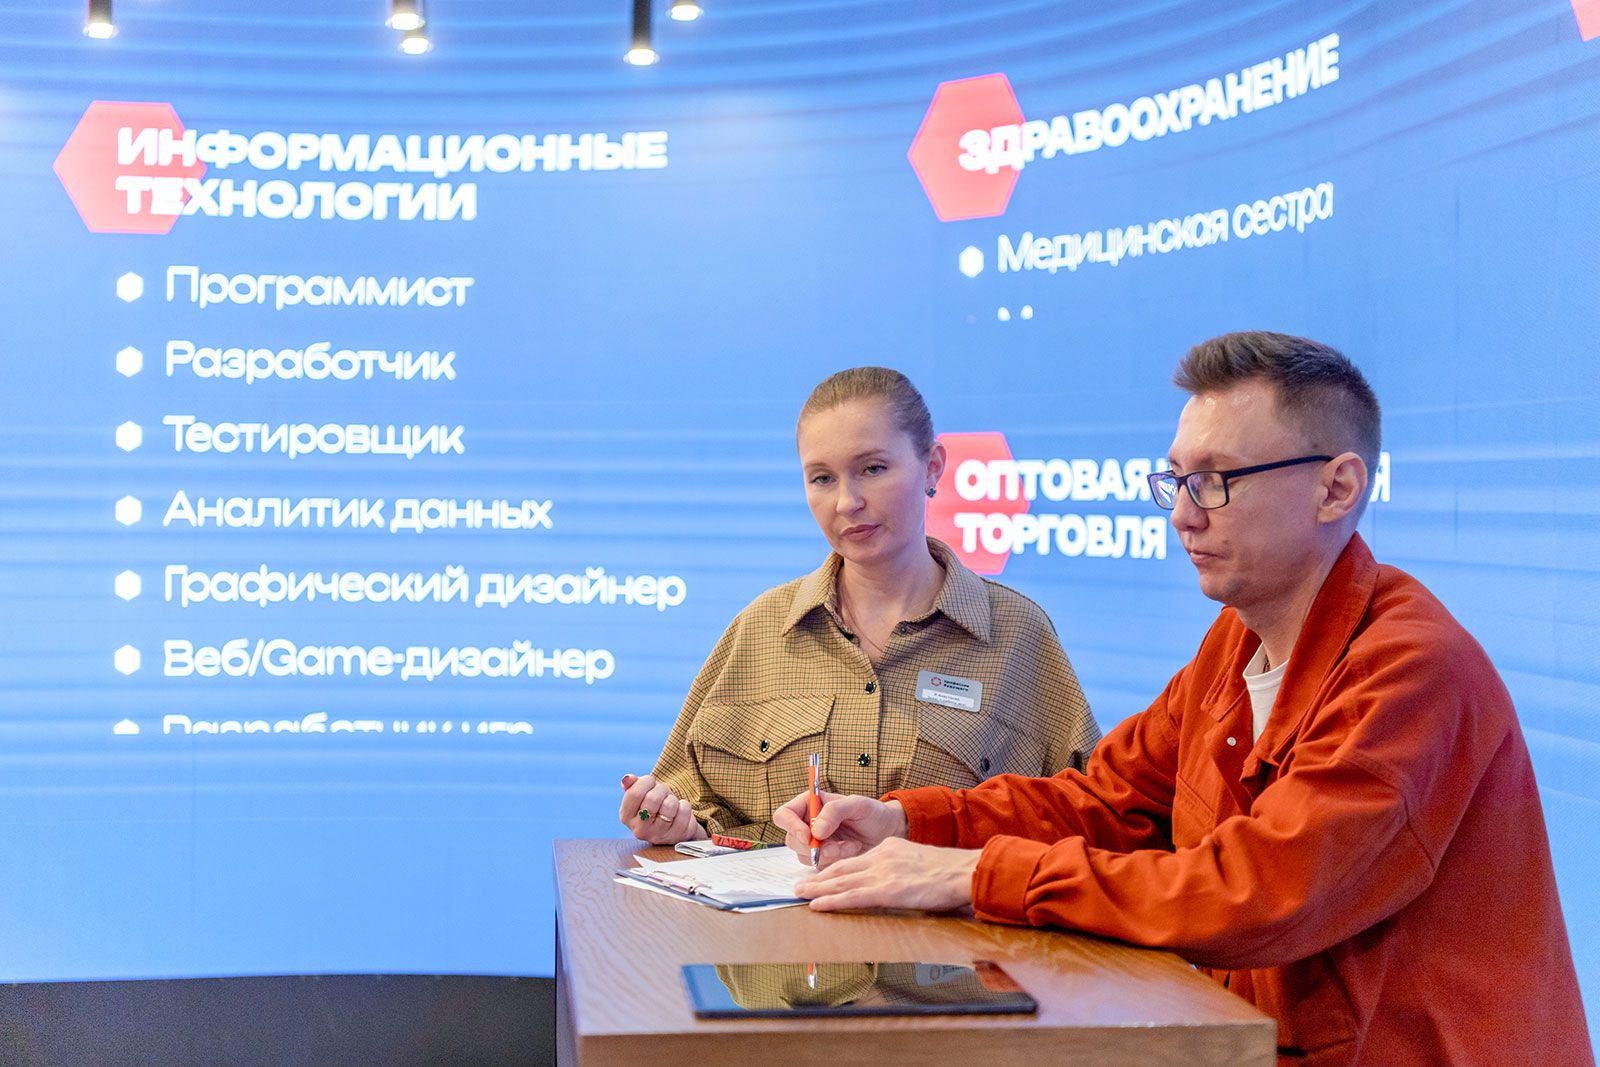 Фото В. Новикова. Пресс-служба Мэра и Правительства Москвы